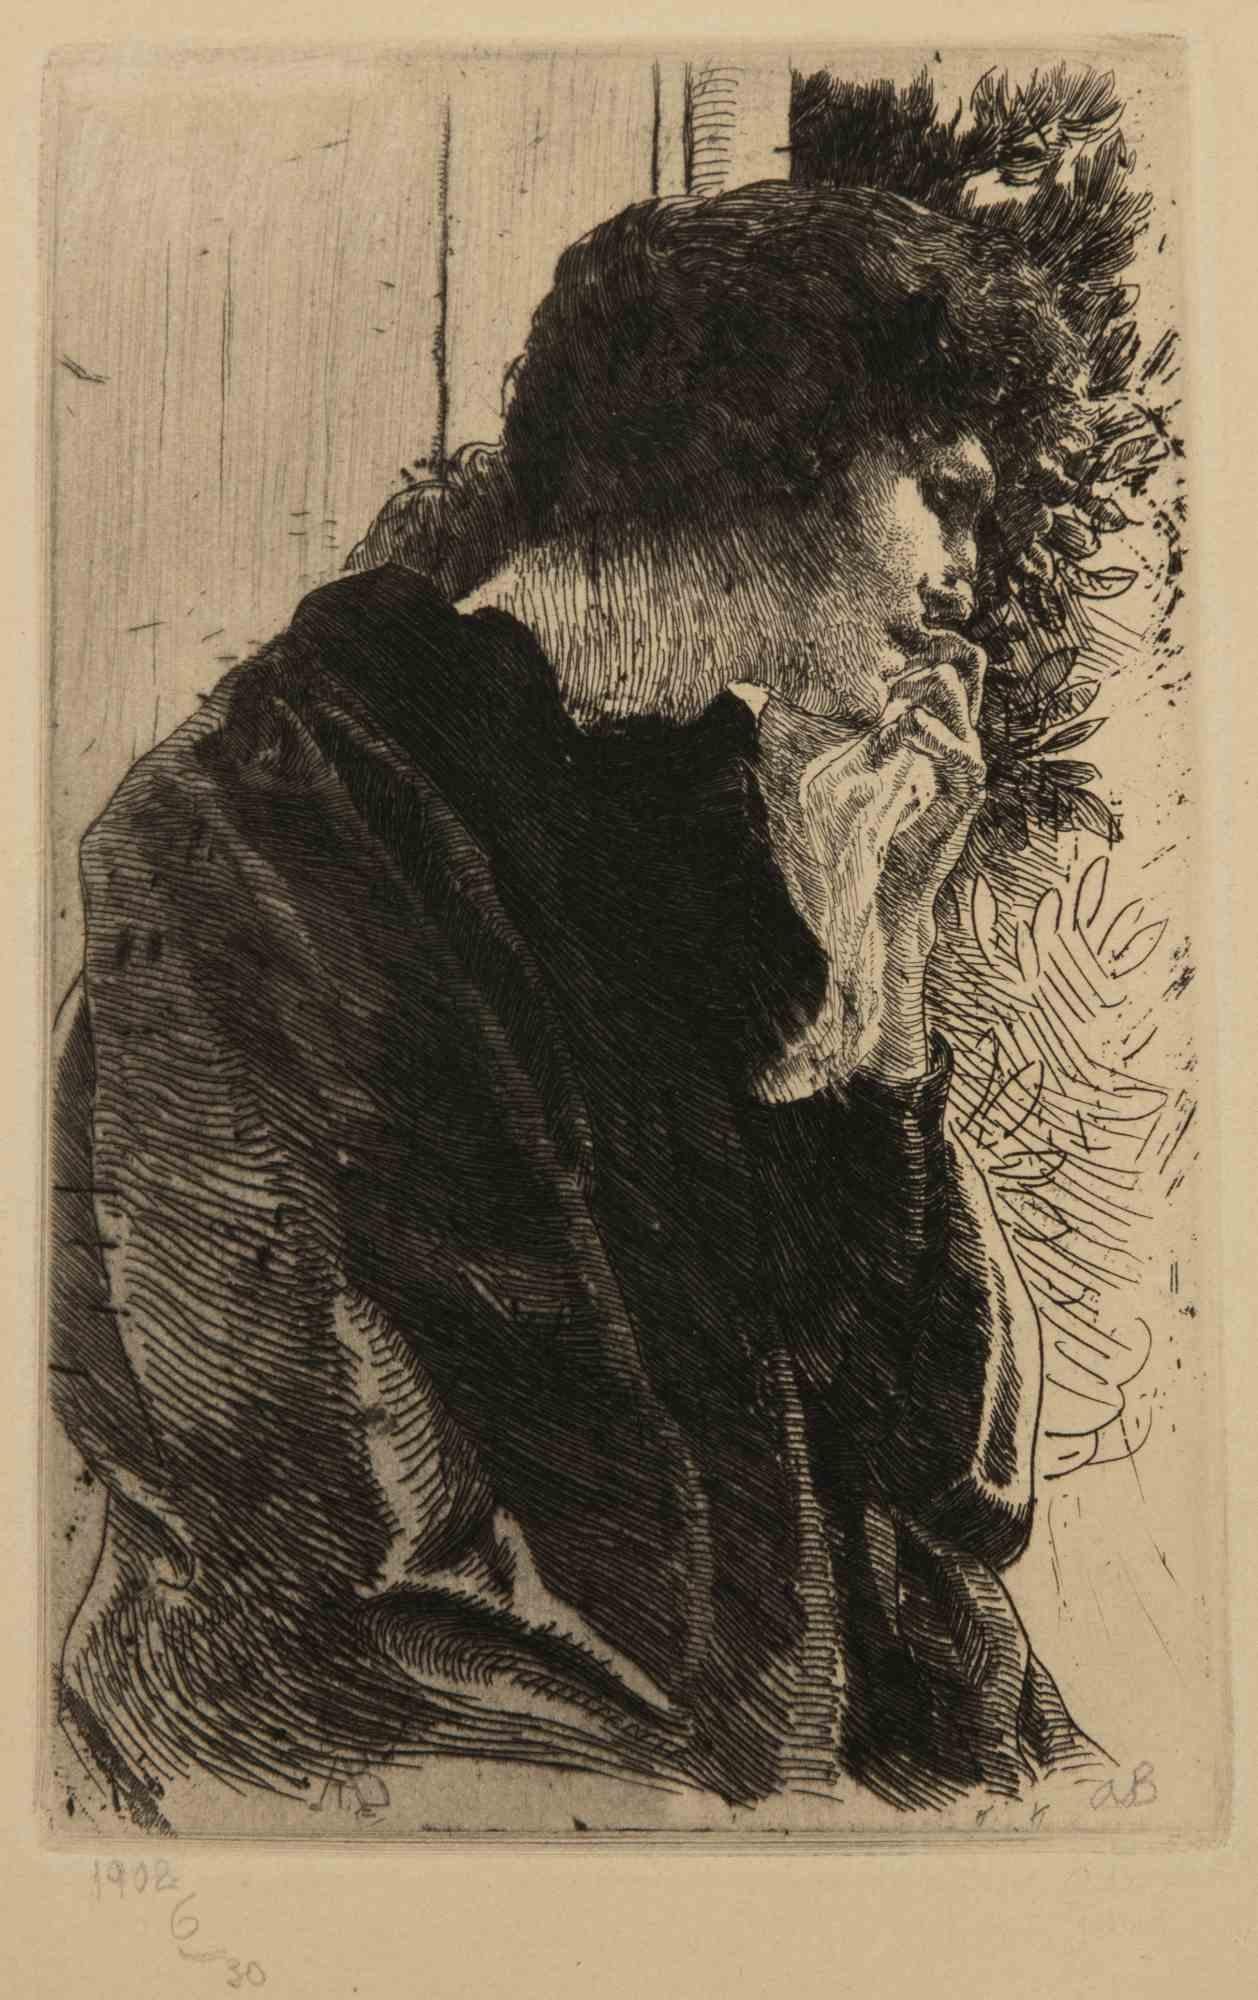 Trois femmes Voilées, est une gravure réalisée par Albert Besnard en 1909.

Gravure ex. 6/30.

Dimension de la dalle  cm. 15 x 9,5. papier cm. 25 x 18.

Signature au crayon et date  dans la partie inférieure droite, date dans la partie